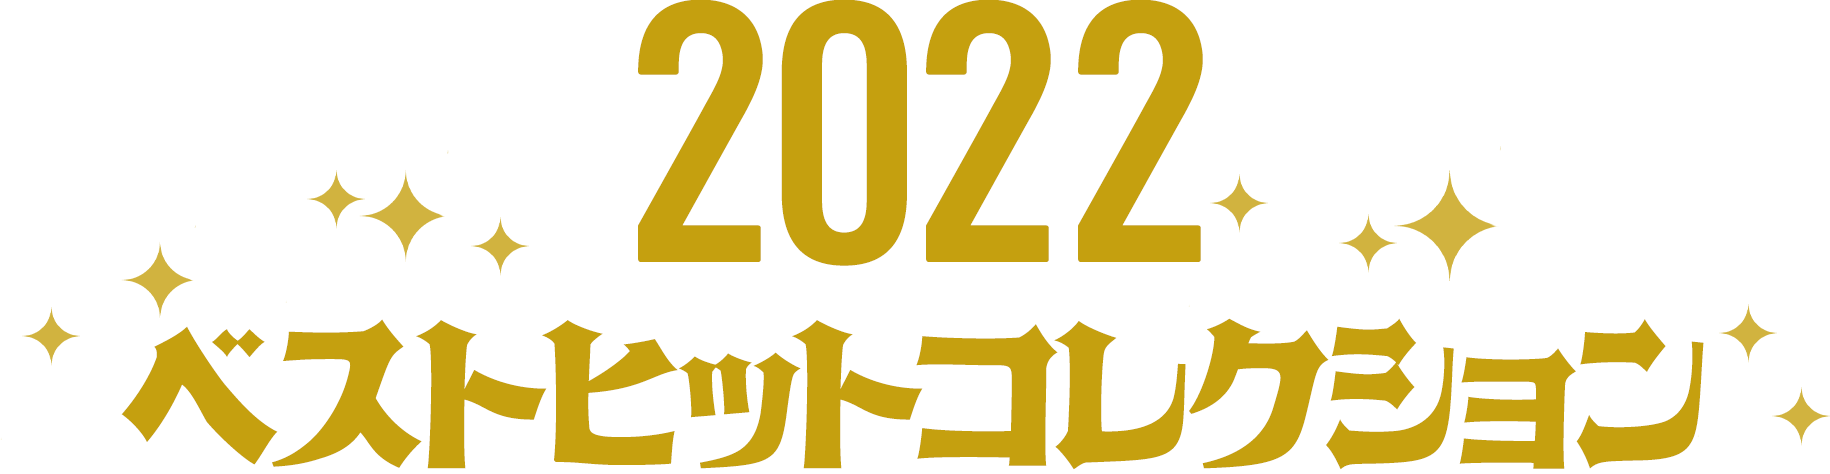 2022ベストヒットコレクション